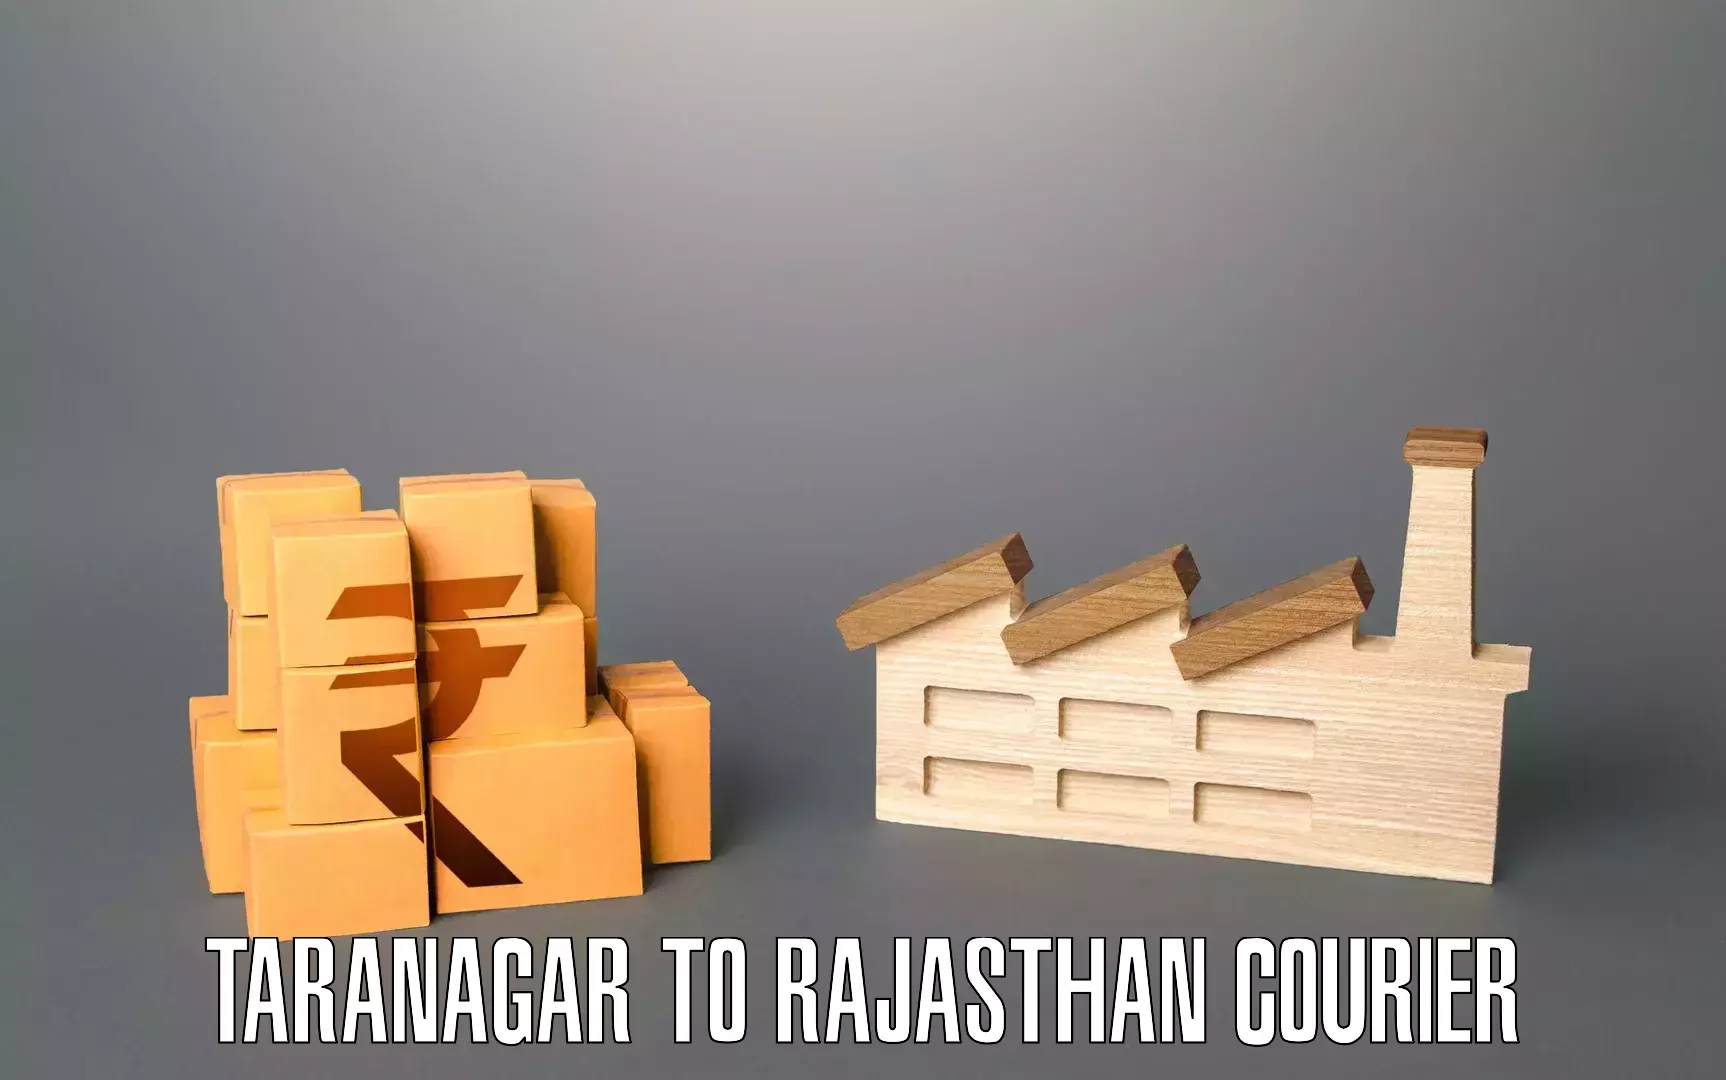 Professional movers and packers Taranagar to Nagaur